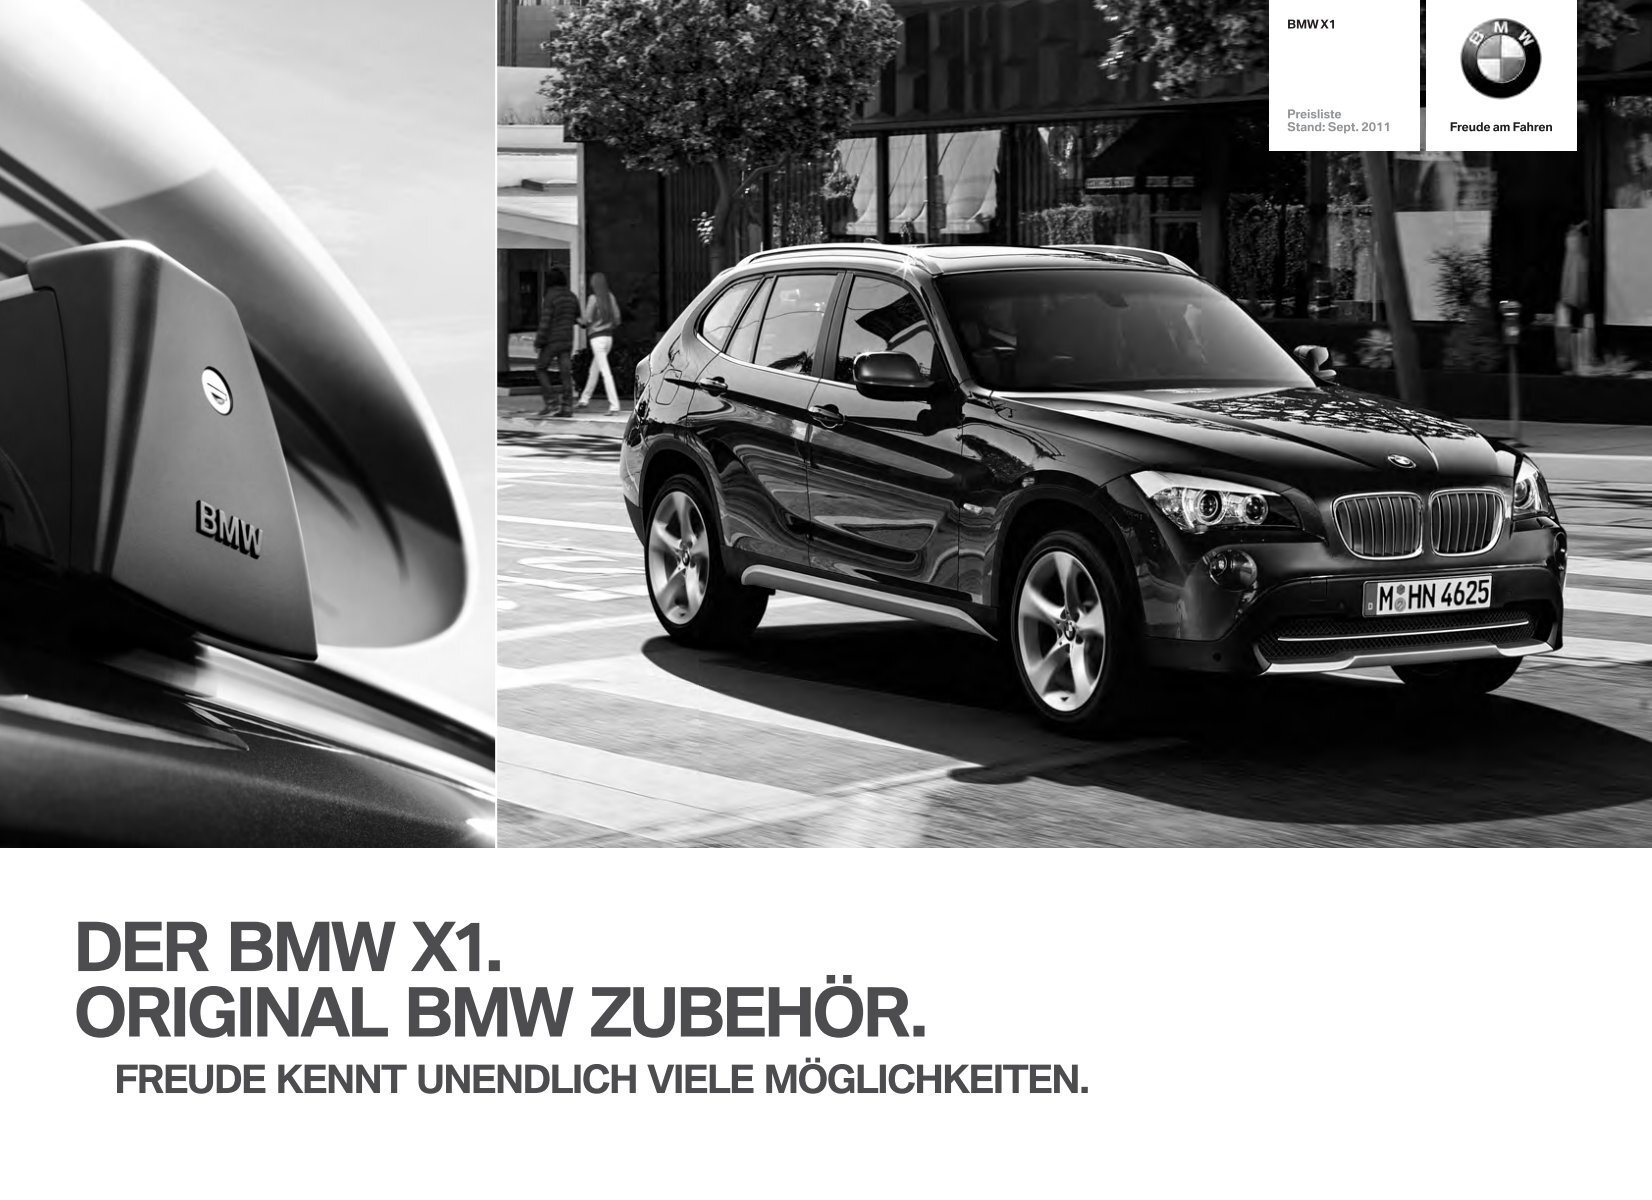 DER BMW X1. ORIGINAL BMW ZUBEHÖR.